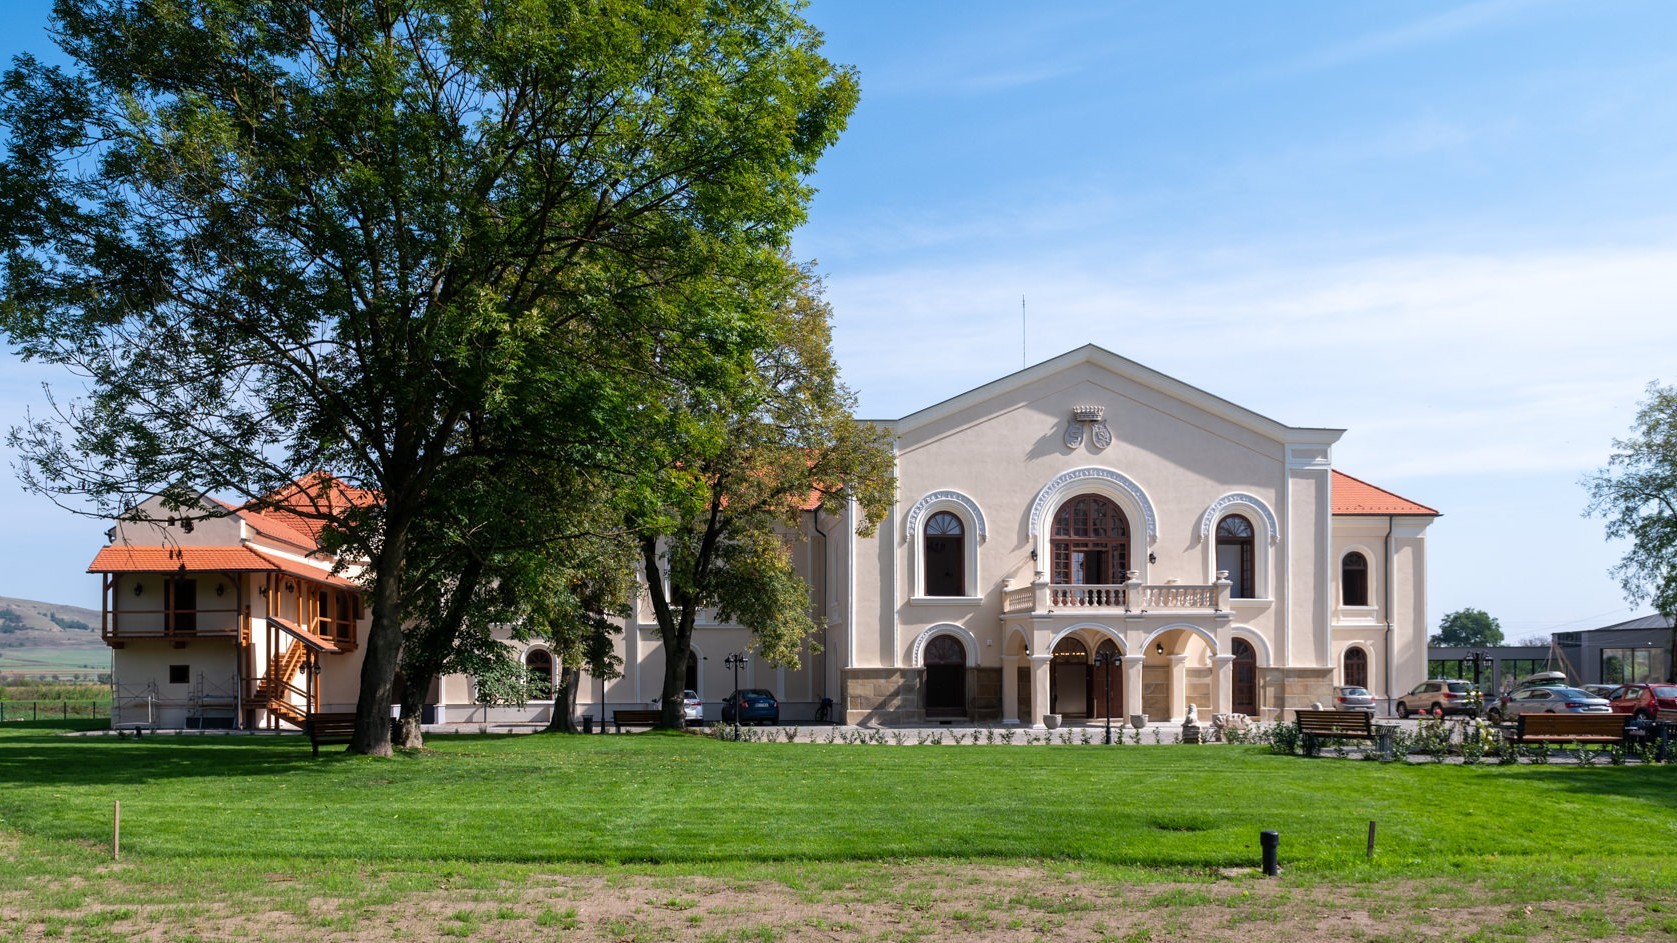 Stammsitz der weiblichen Symbolgestalt ungarischer Kalvinisten vollständig renoviert